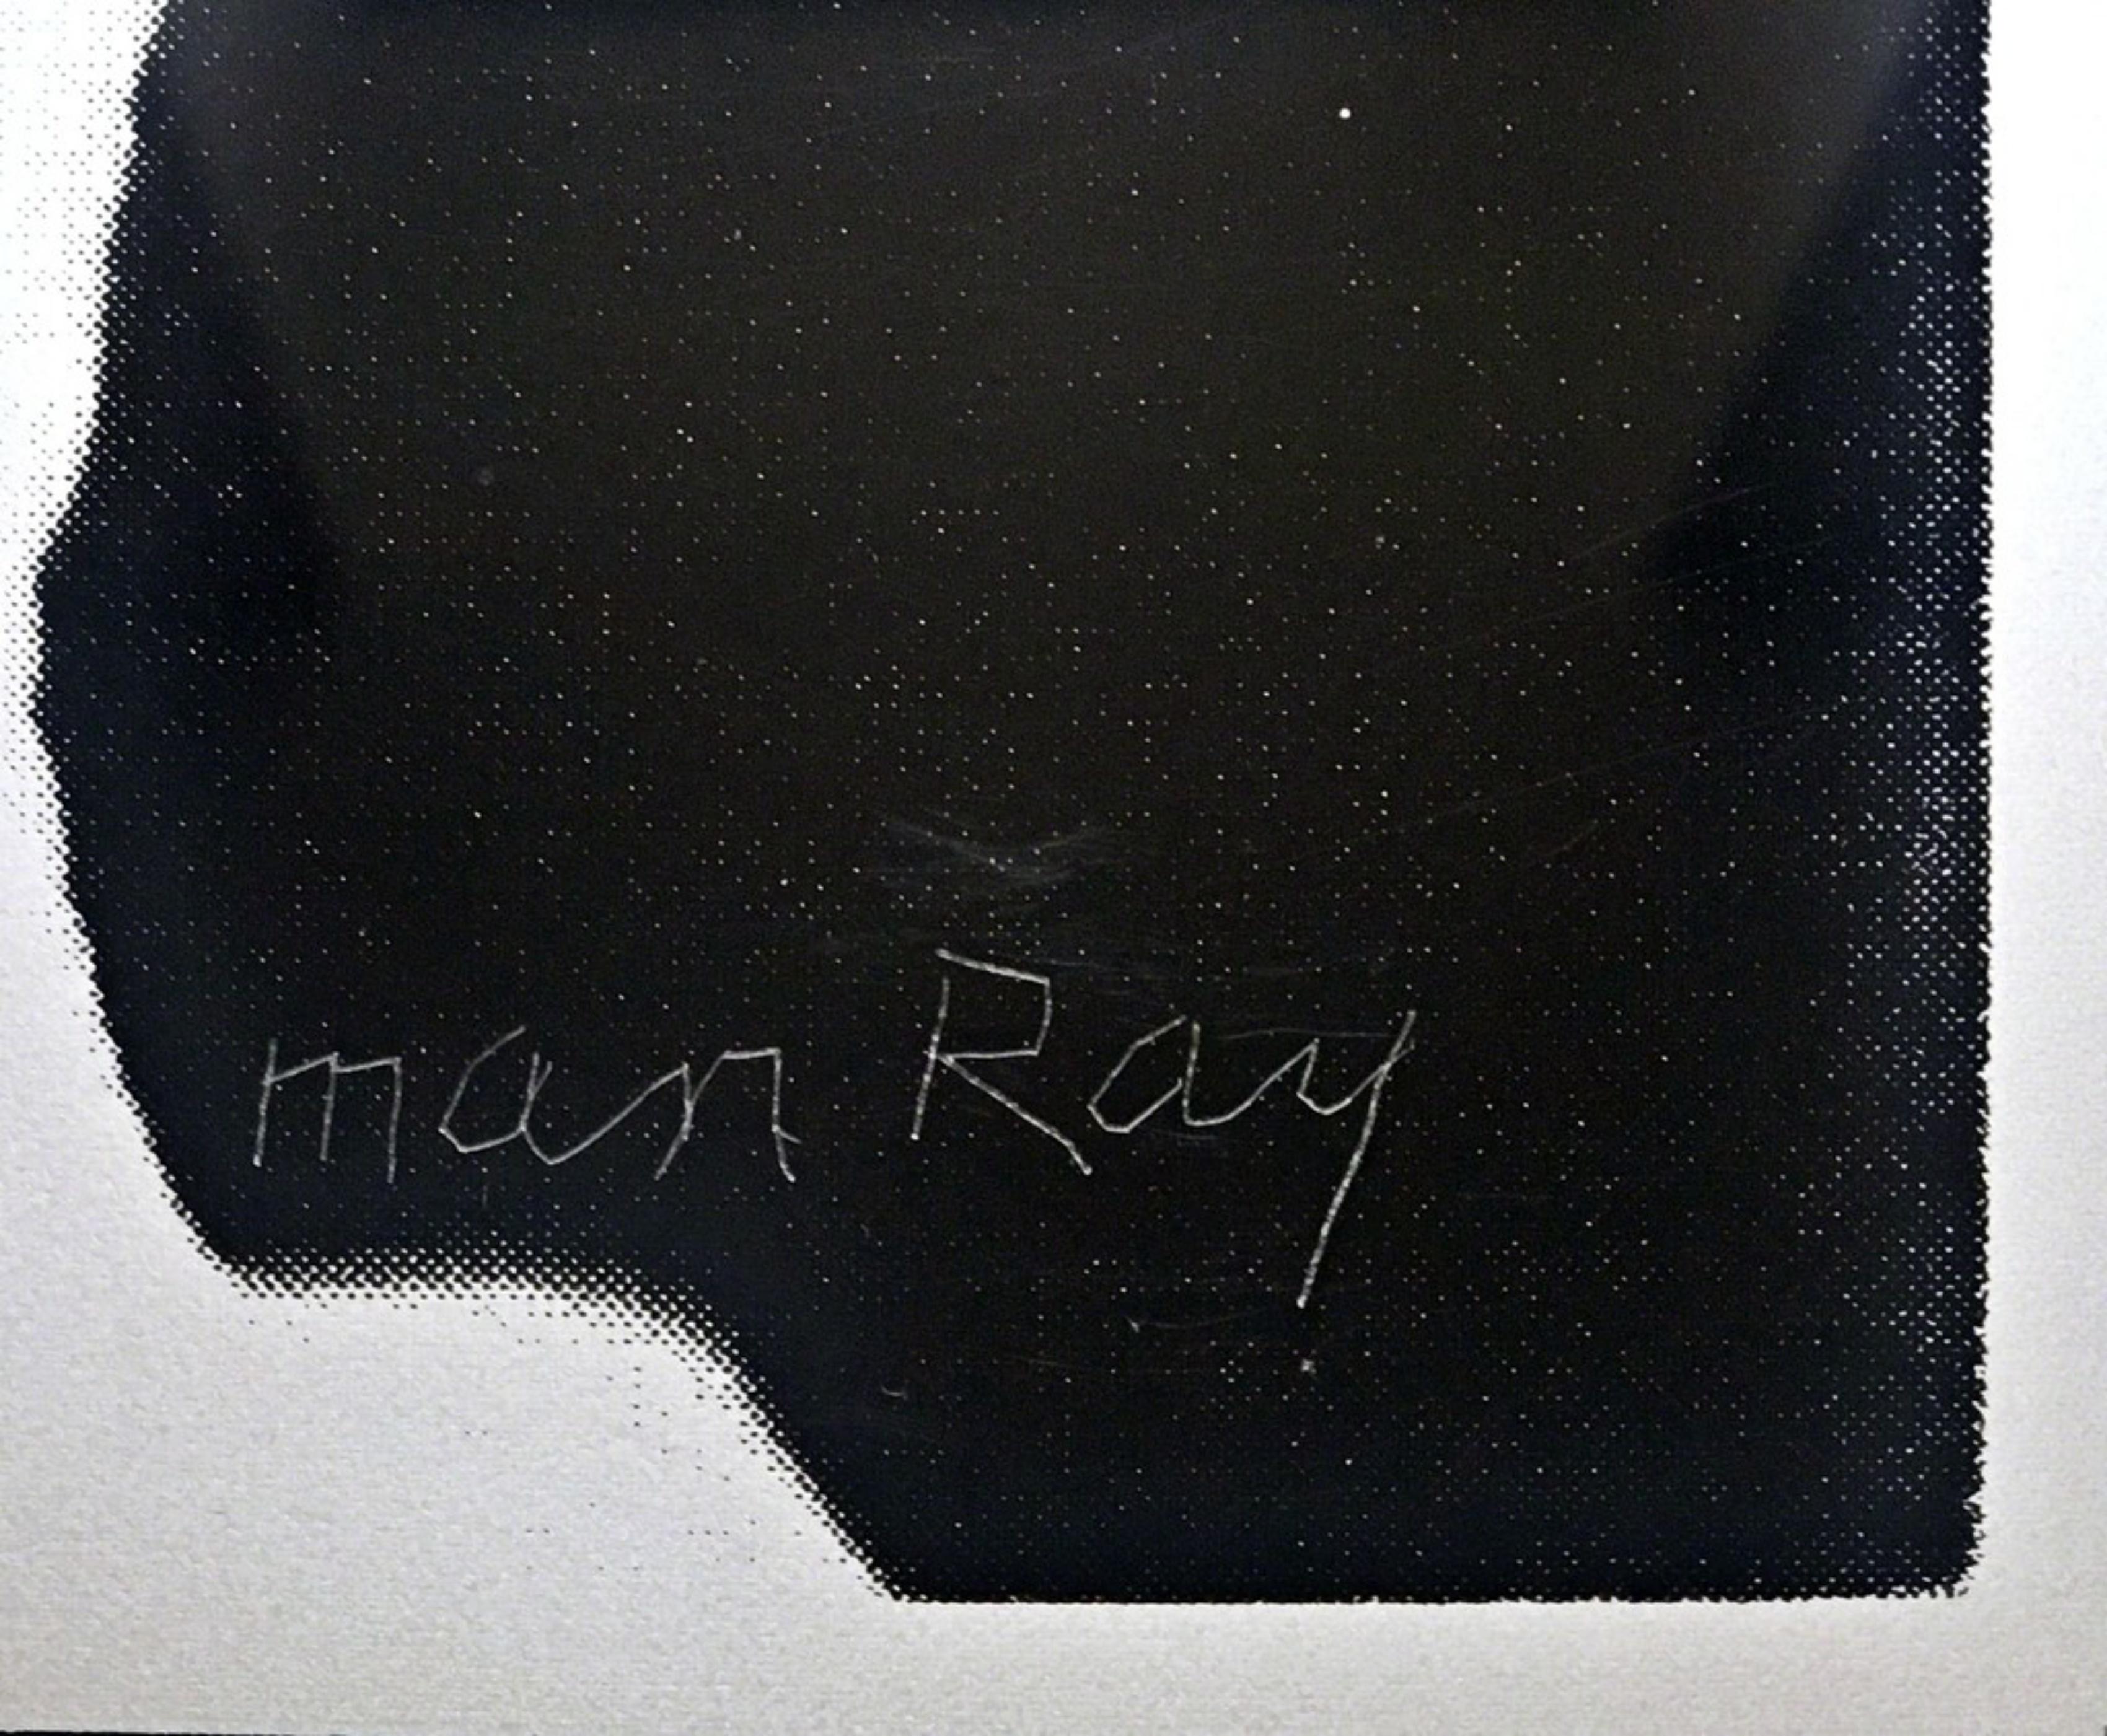 MAN RAY
Zwei Hände, 1966
Gemischte Medien: Siebdruck auf Plexiglas
Veröffentlicht von Gemini GEL 
Abmessungen:
Bild: 20 